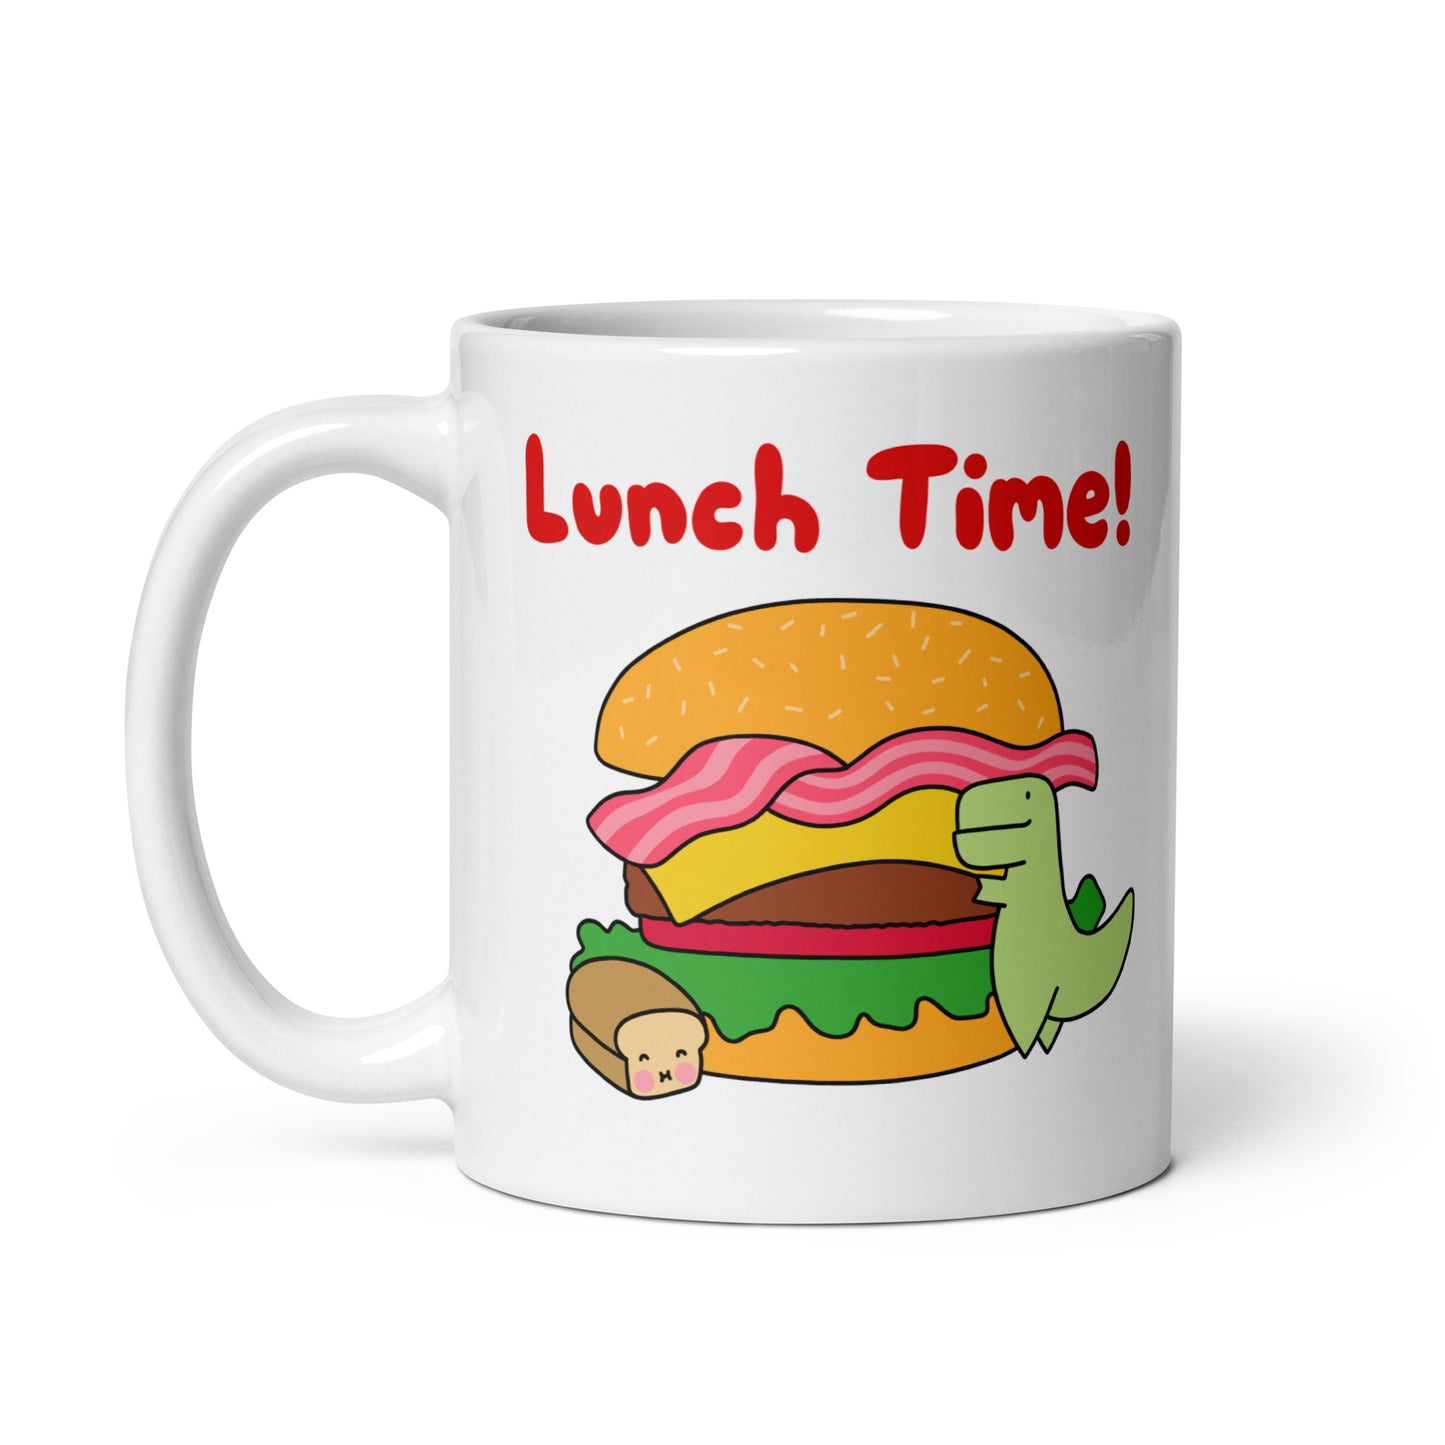 Lunch Time Mug